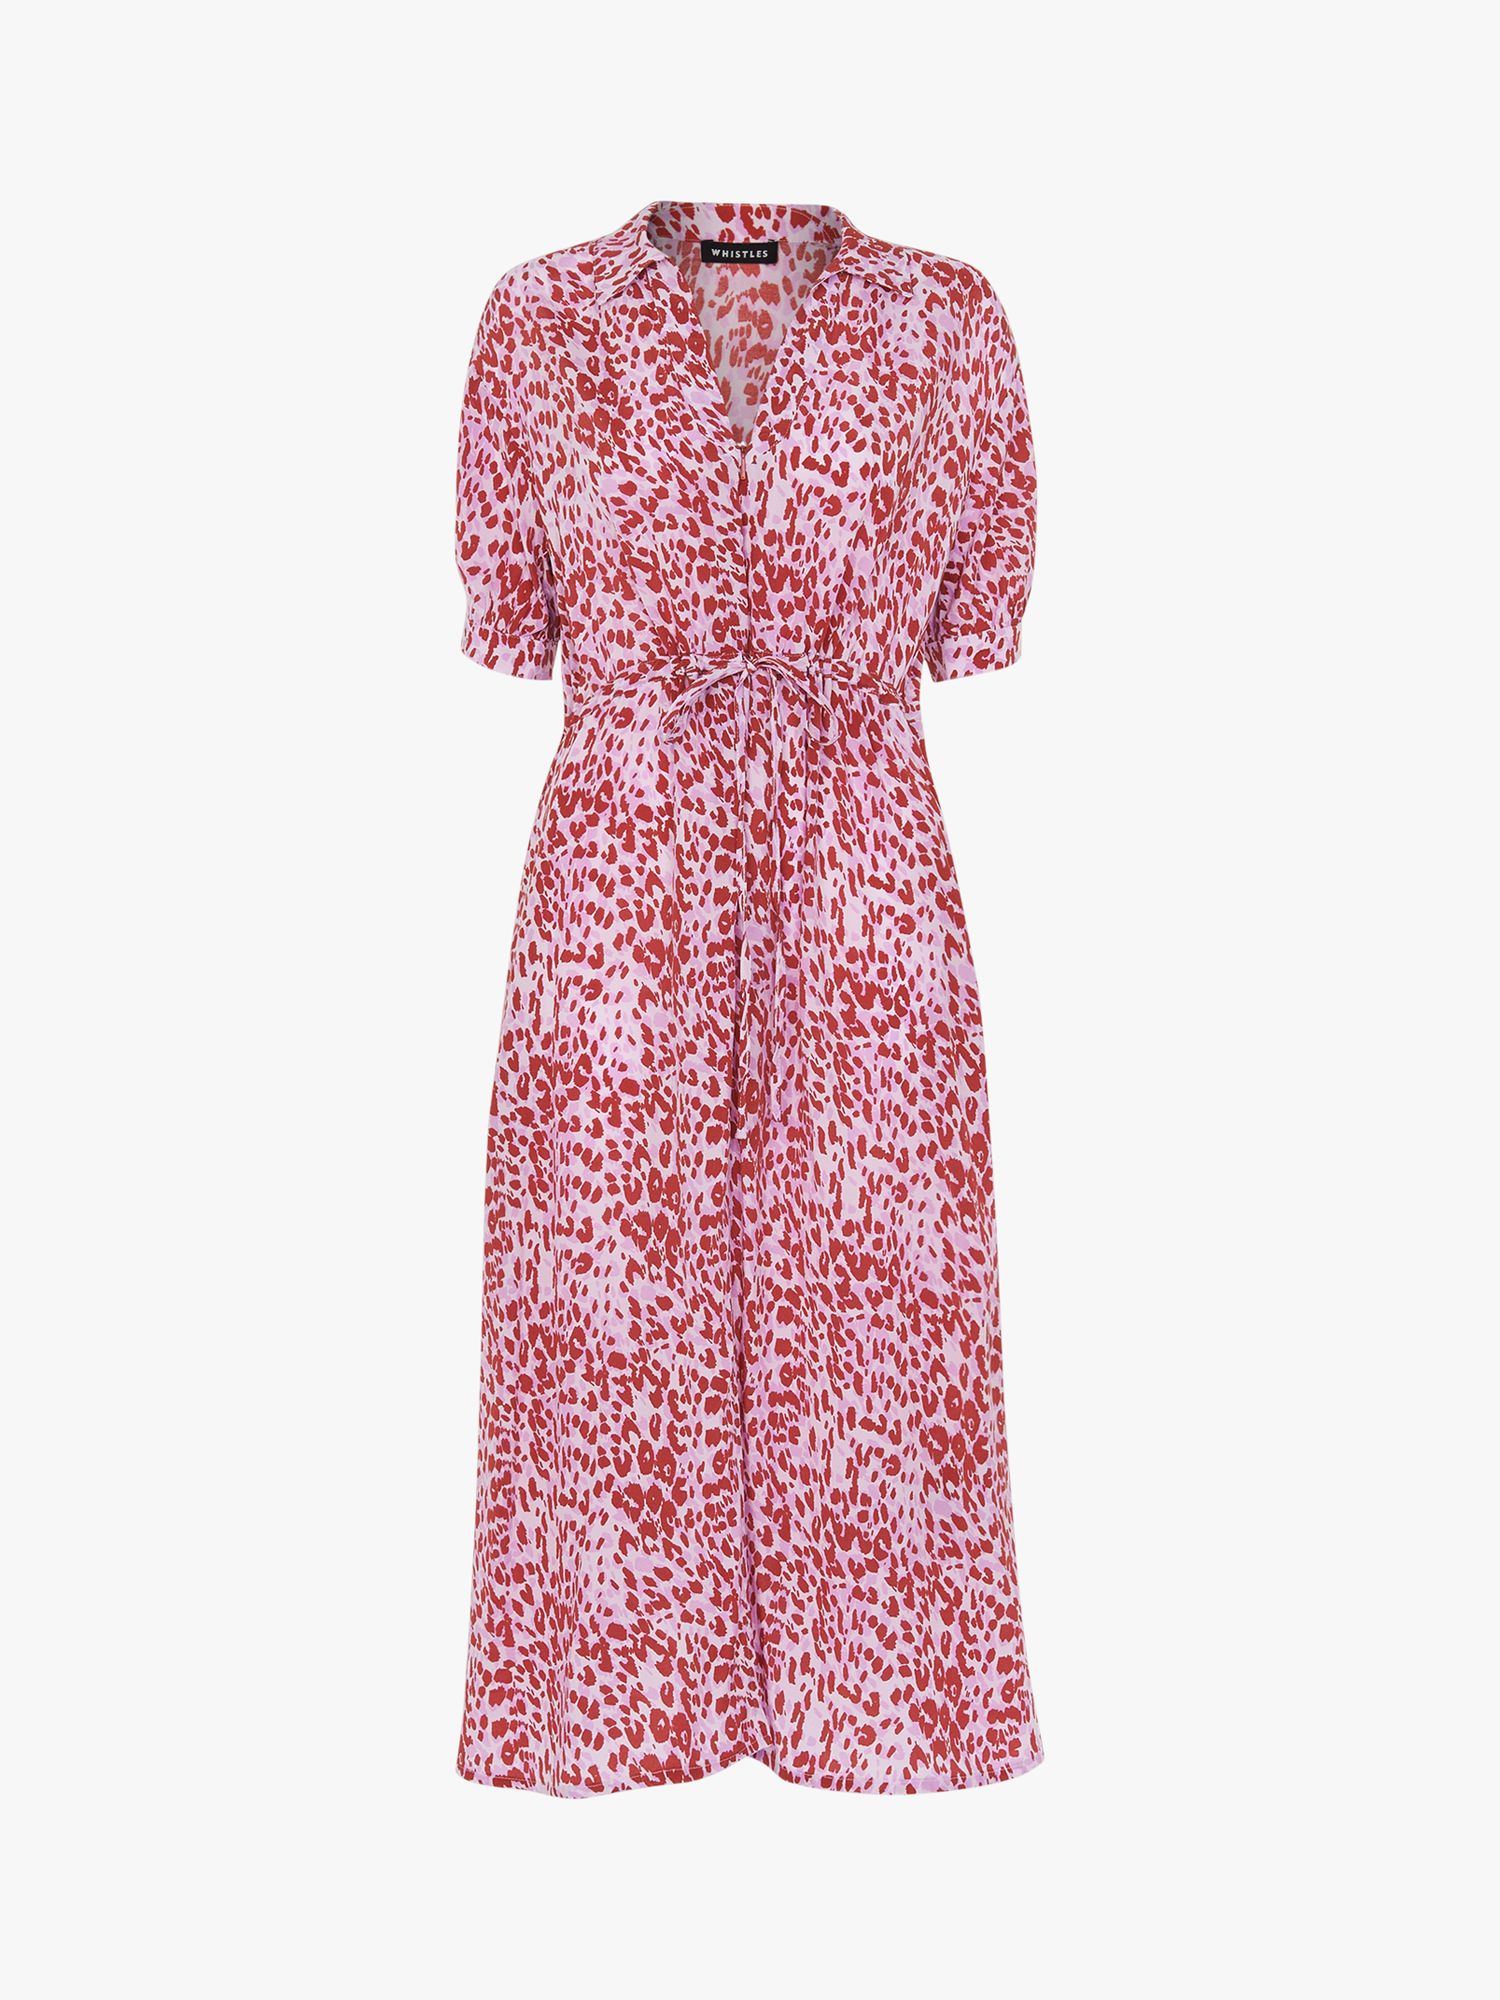 Whistles Summer Cheetah Print Midi Dress, Pink/Multi at John Lewis ...